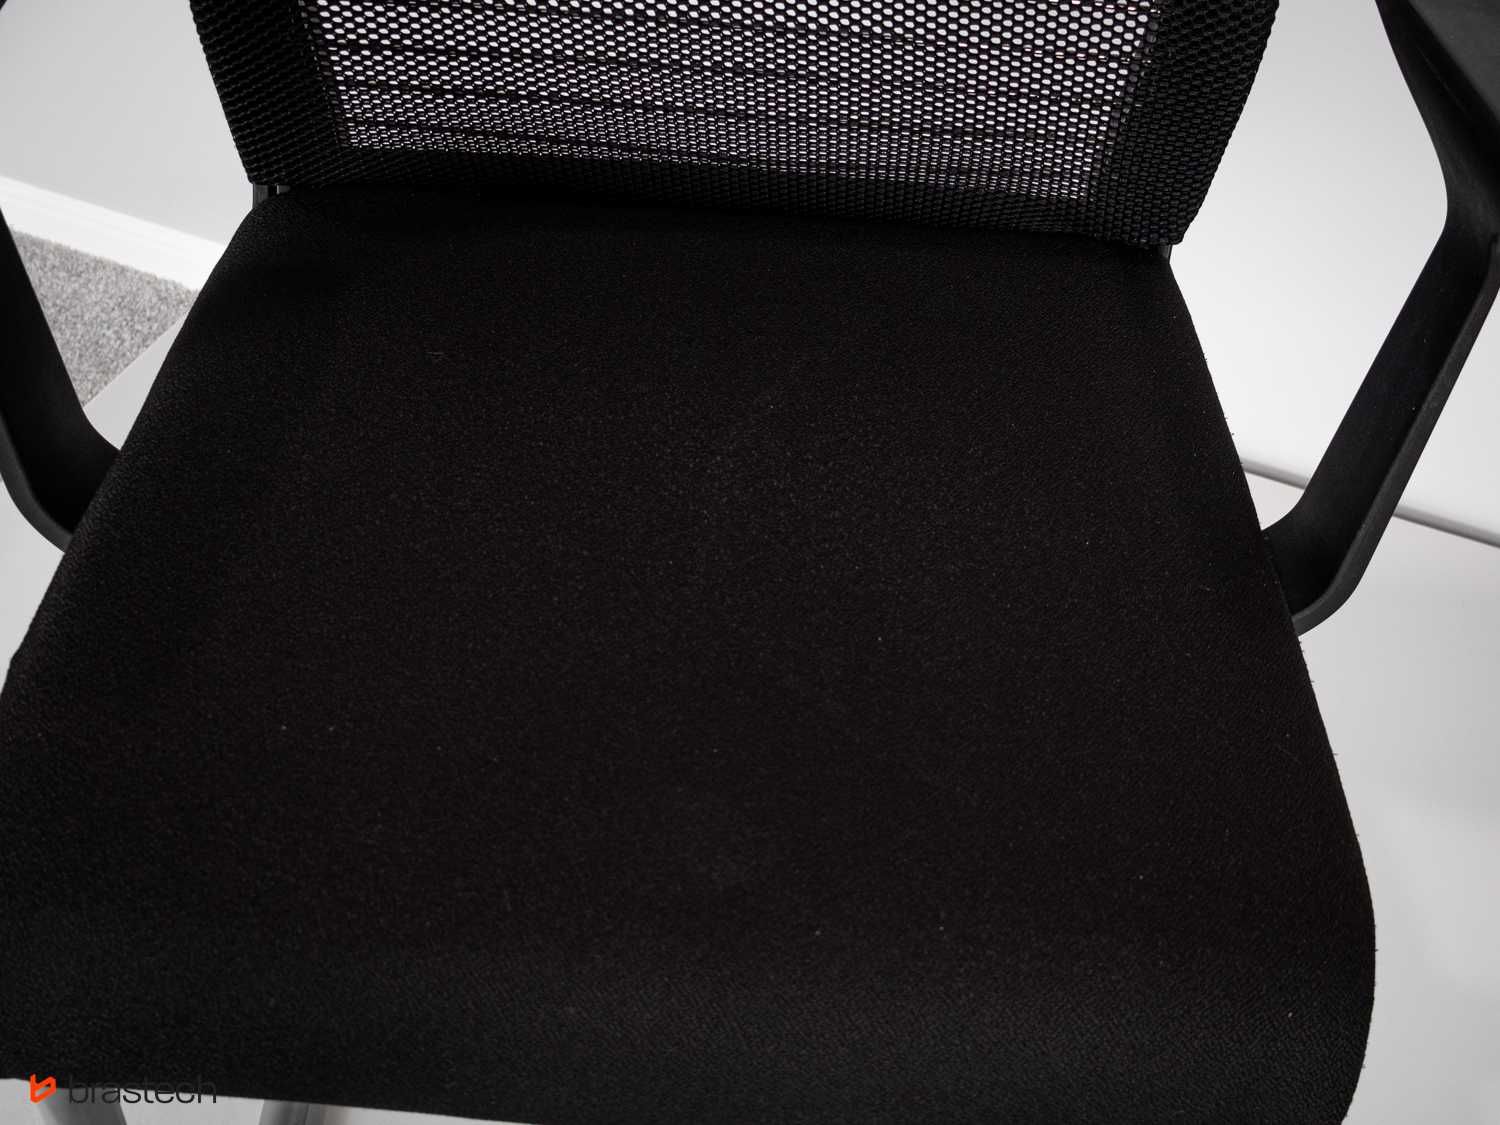 Krzesło na płozach dom biuro Steelcase tapicerka + siatka